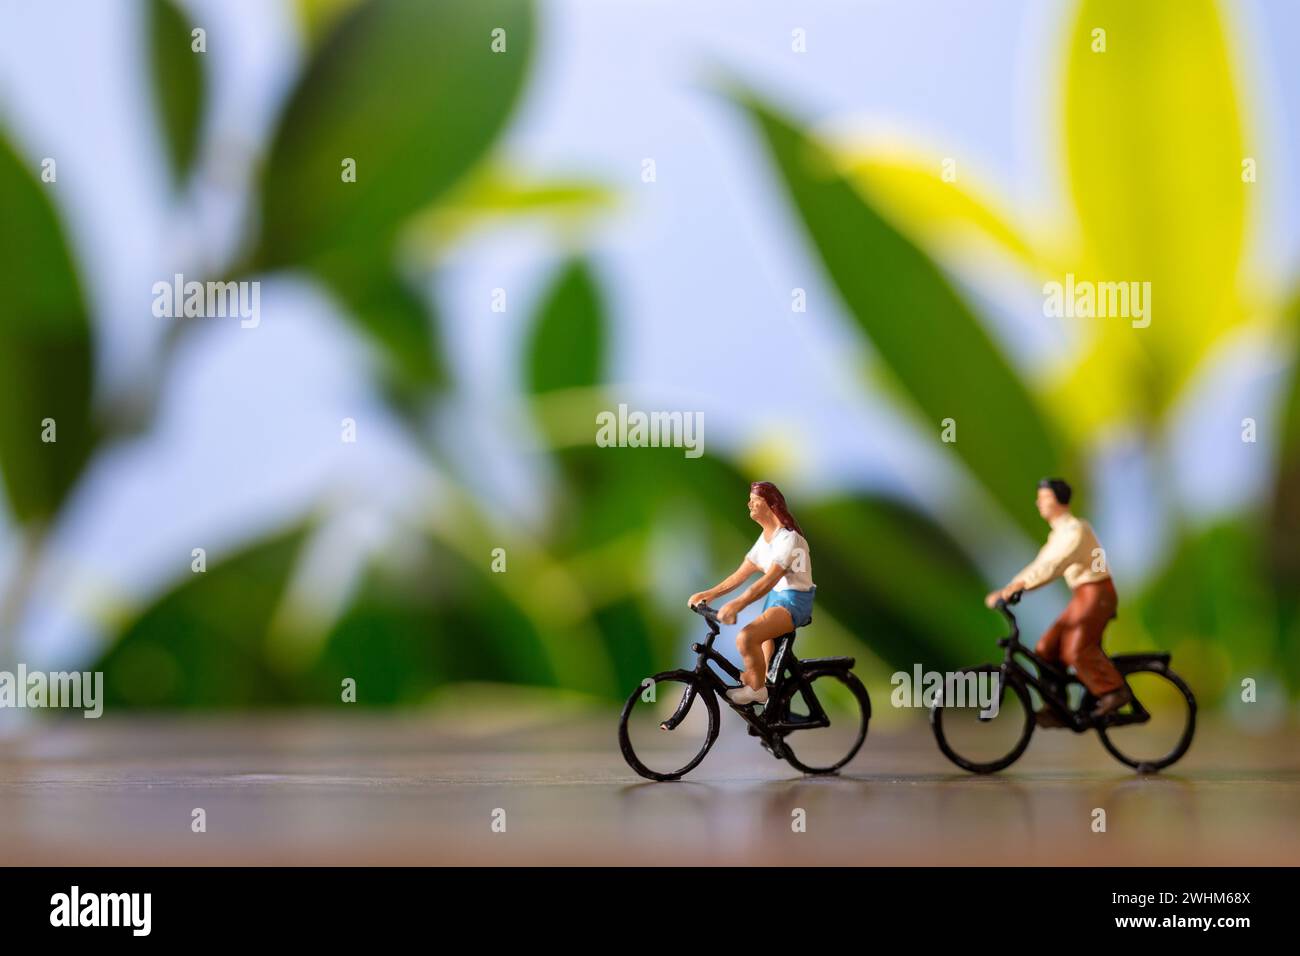 Miniaturmenschen stehen mit dem Fahrrad, World Bike Day Konzept Stockfoto